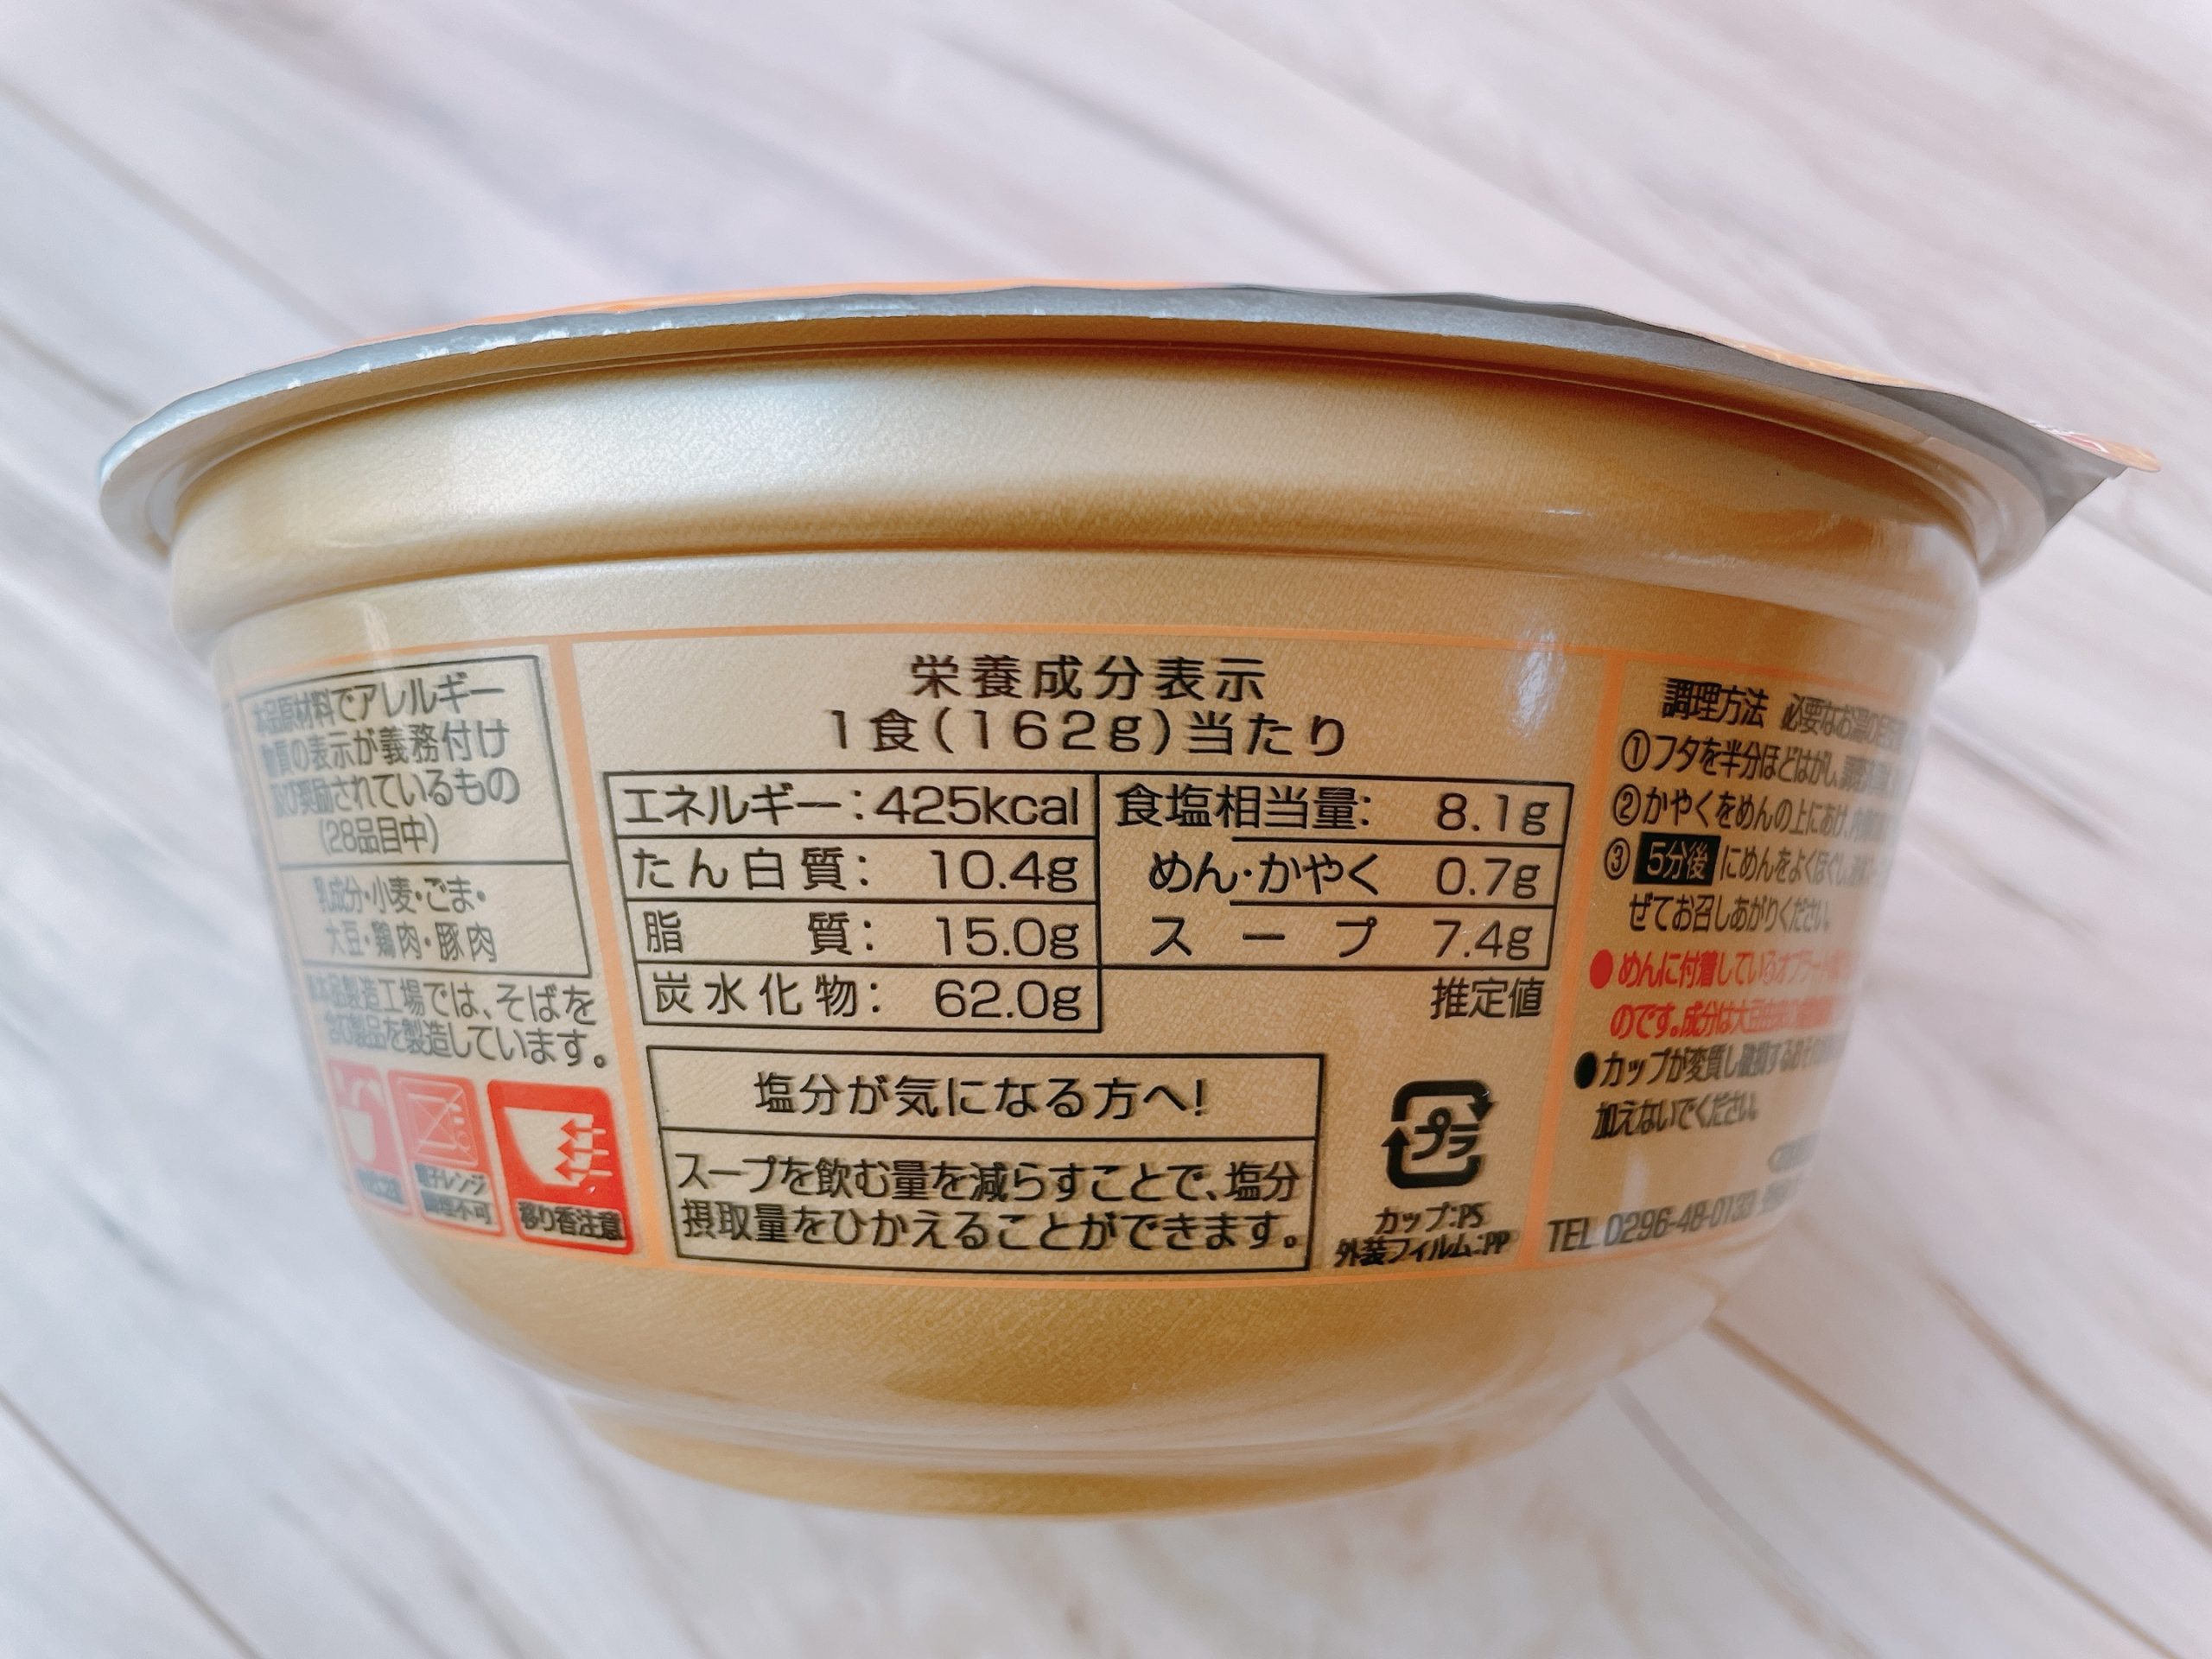 ニュータッチ 凄麺札幌 濃厚味噌ラーメン、原材料やカロリーなど